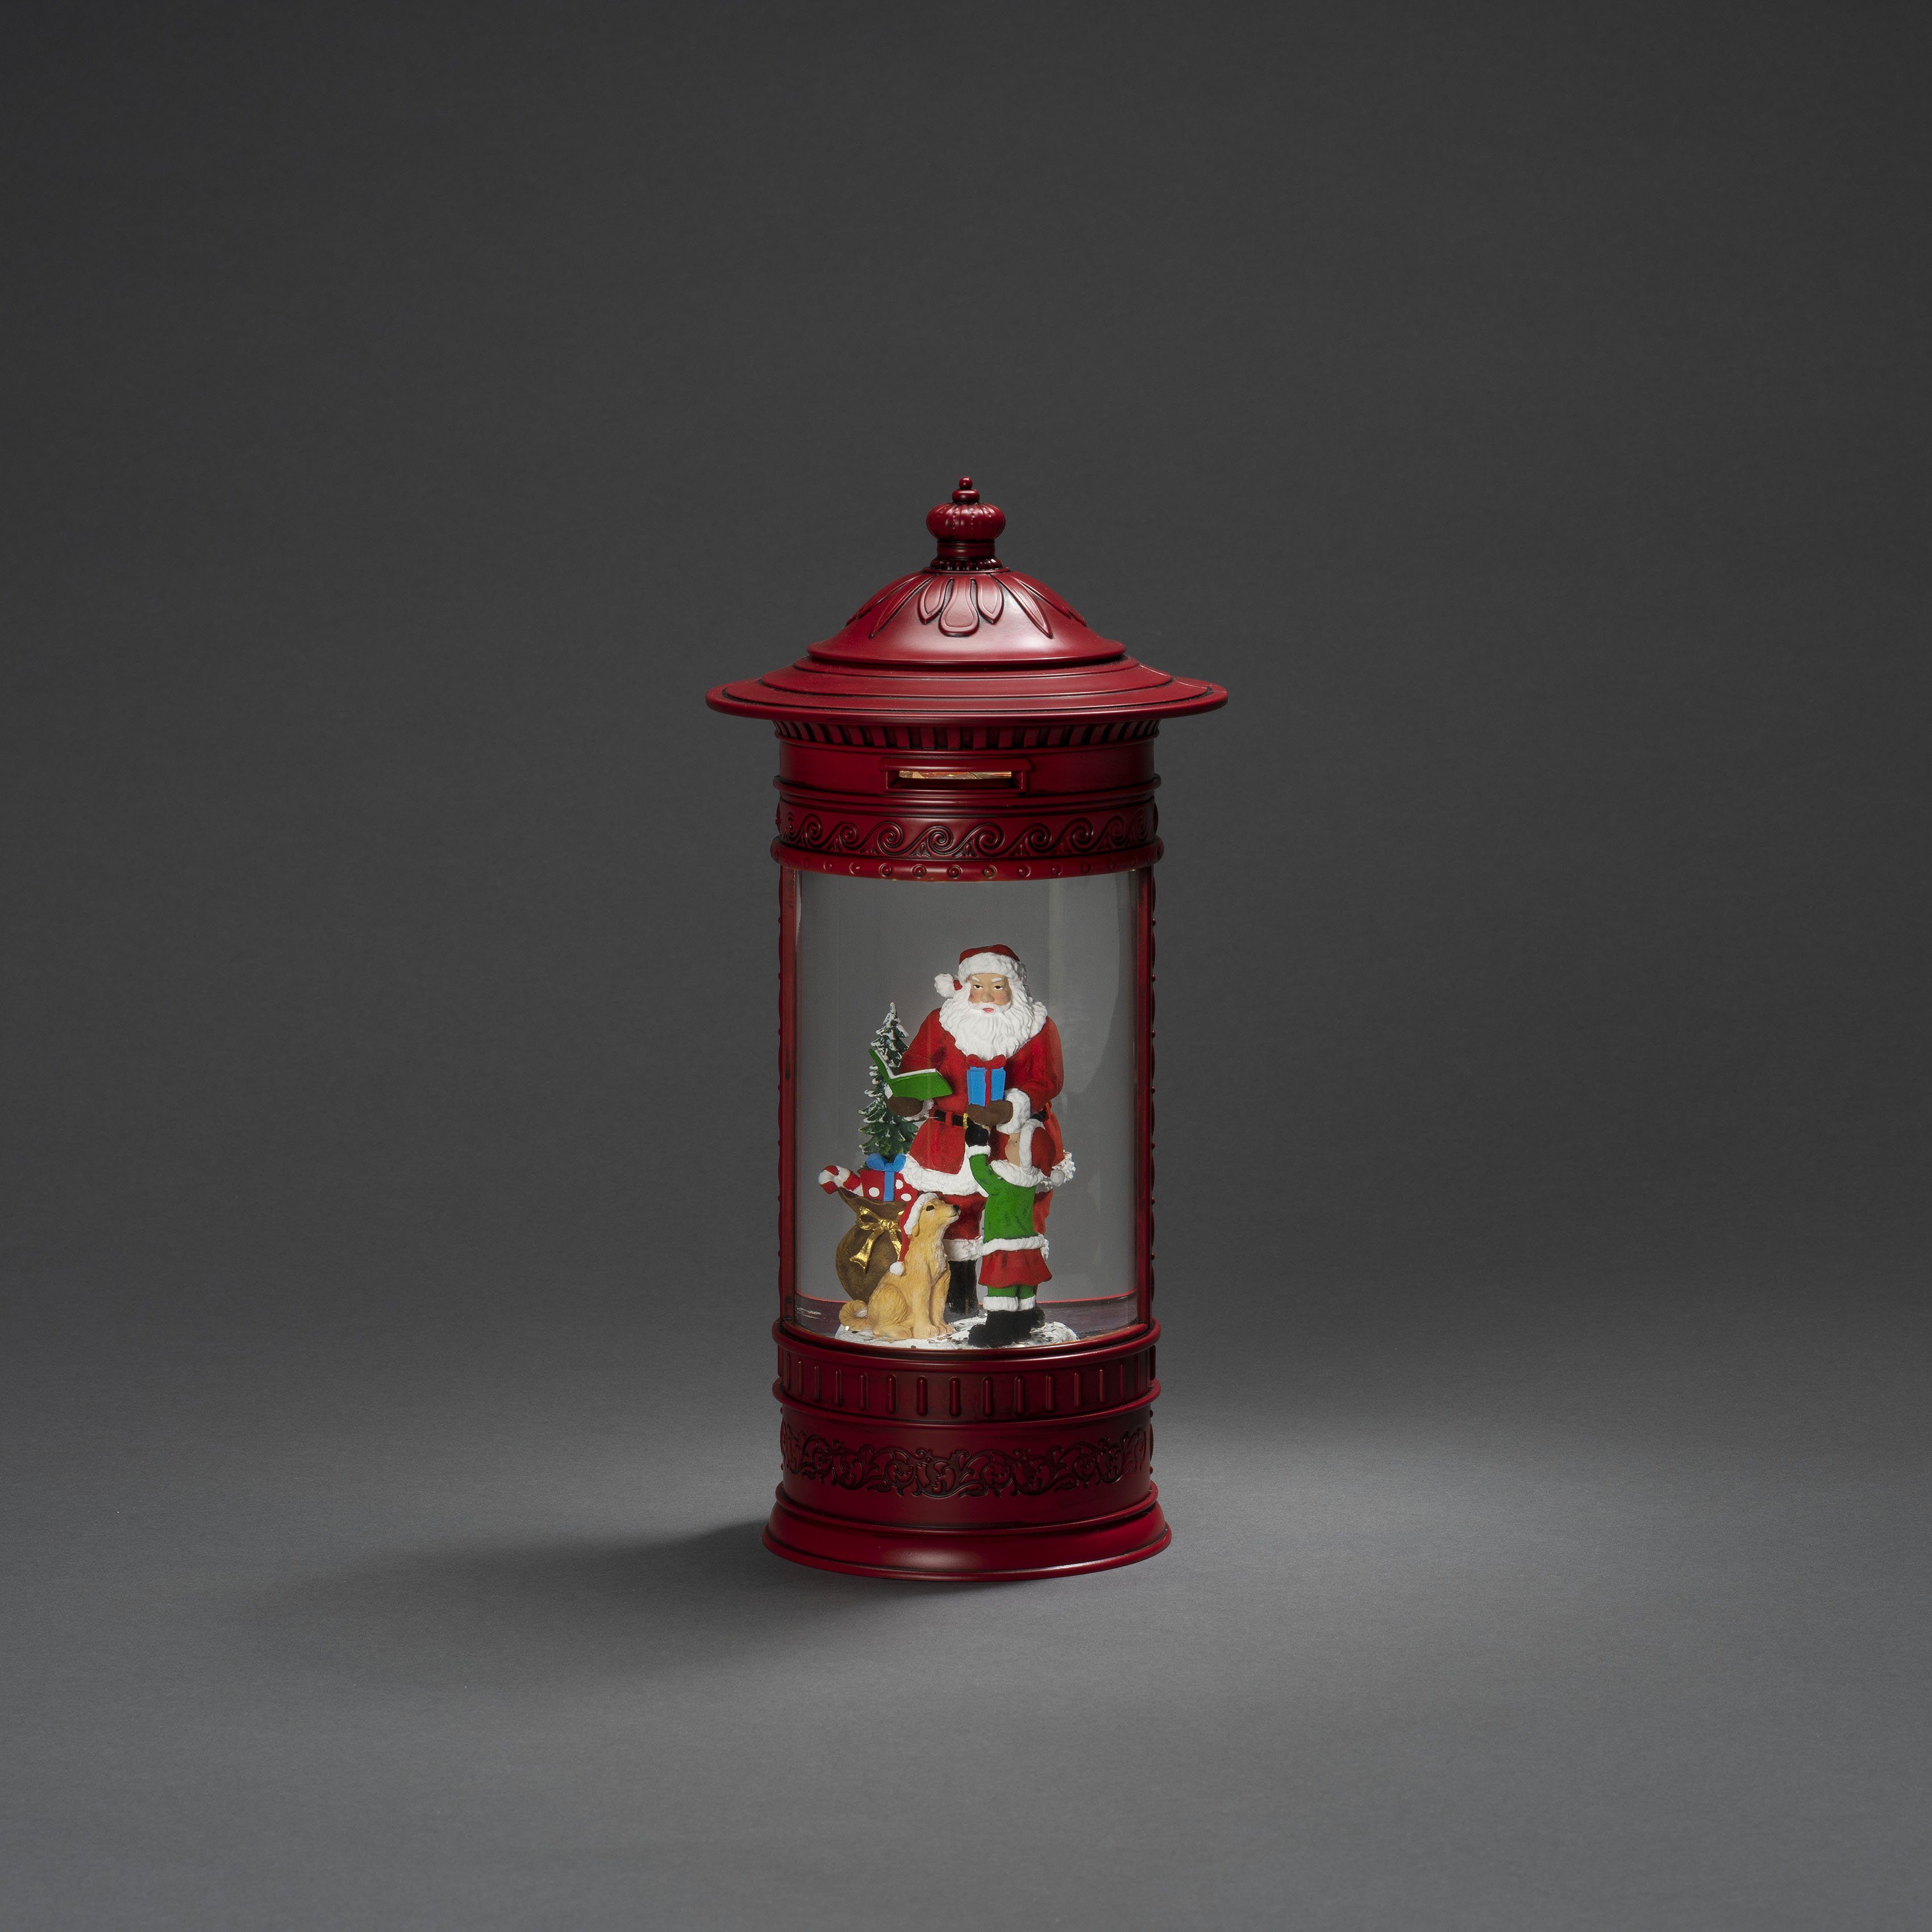 KONSTSMIDE LED Laterne Warmweiß, mit Weihnachtsdeko rot, Hund" Kind "Weihnachtsmann LED fest + rot, LED integriert, Briefkasten, Wasserlaterne